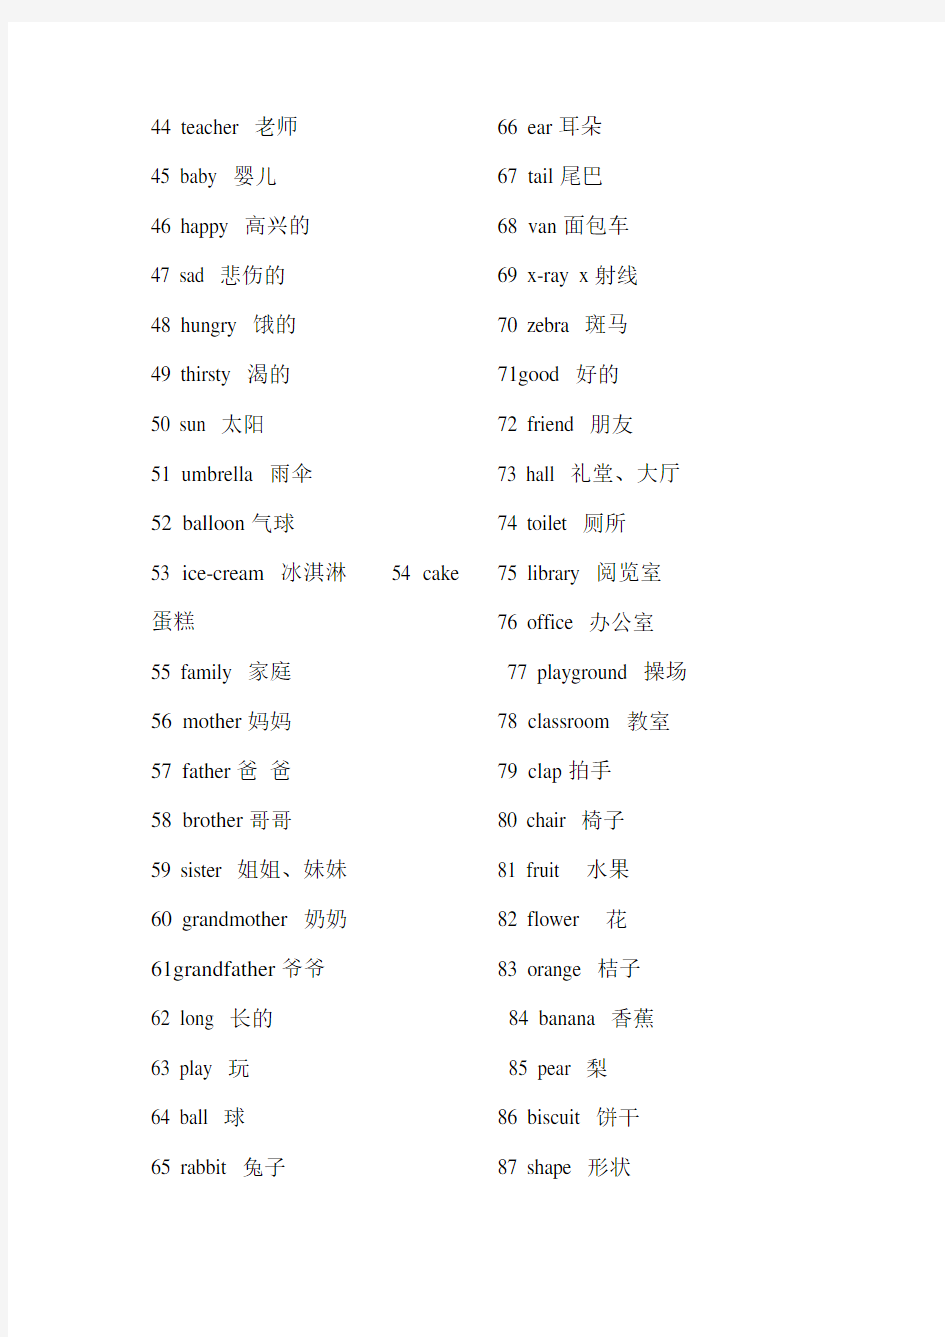 上海沪教版牛津英语-小学三年级上学期重要单词表